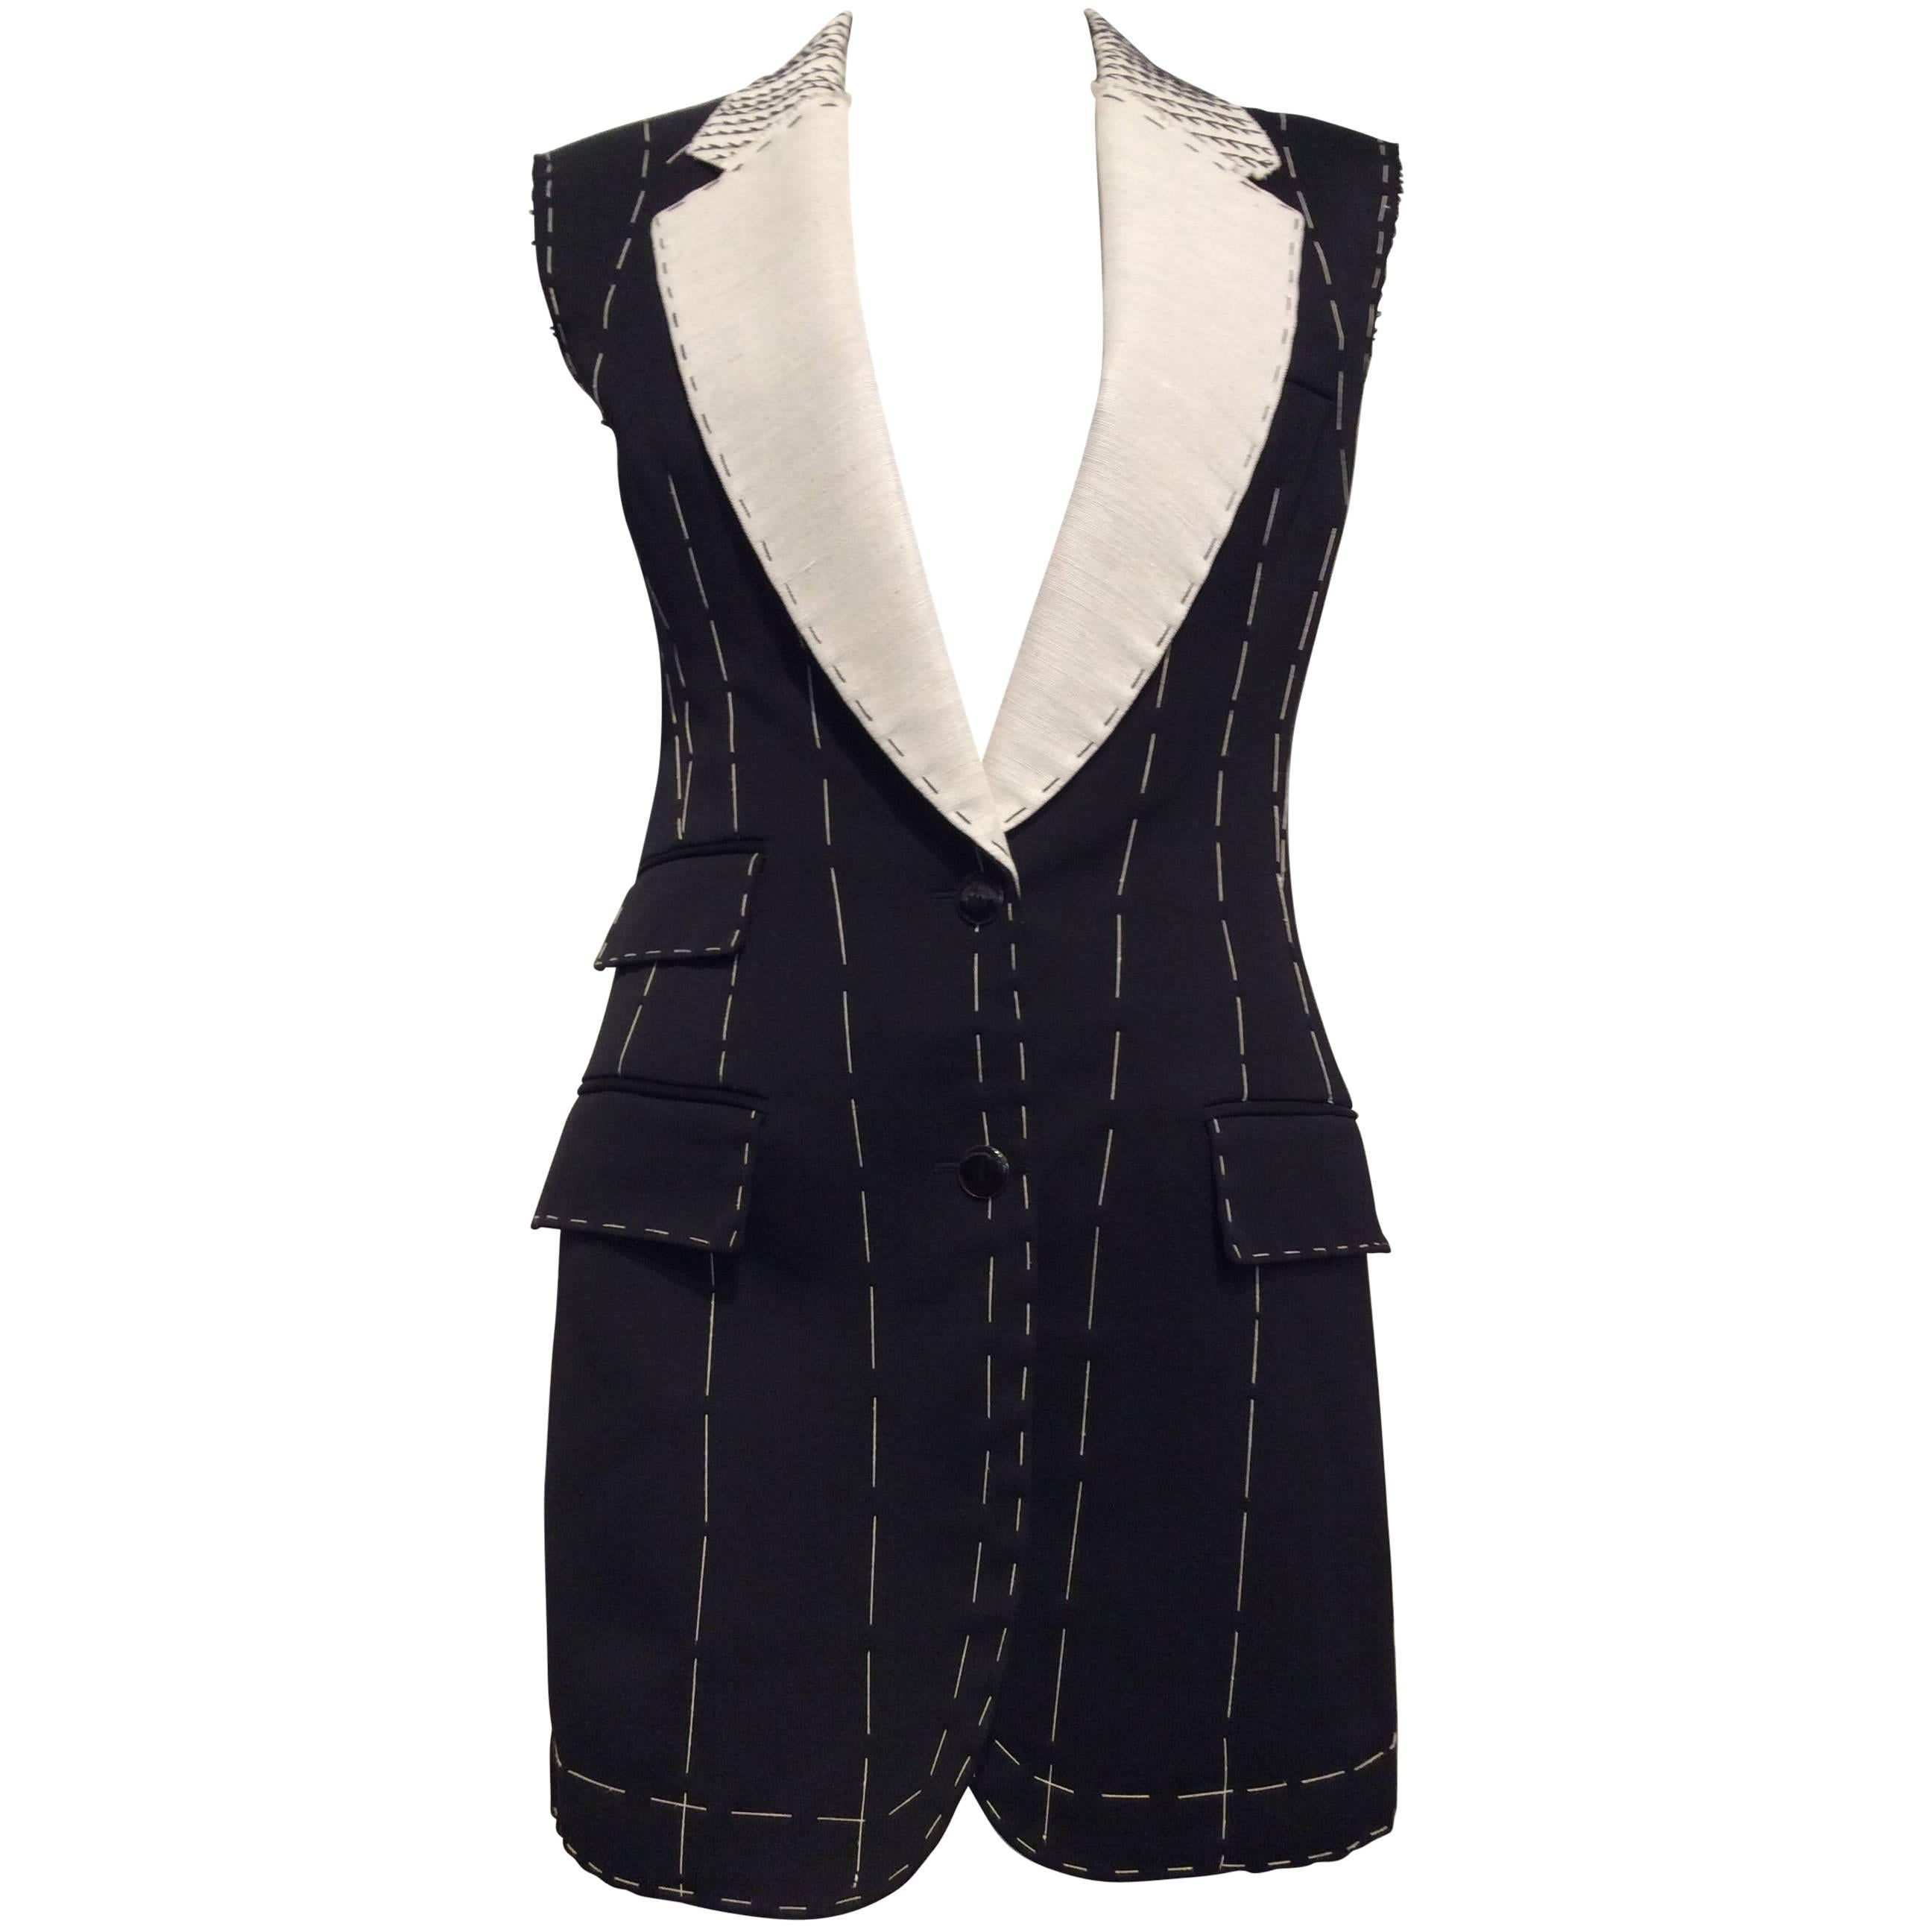 Alexander McQueen Black, Tailored, Deconstructed Wool Vest